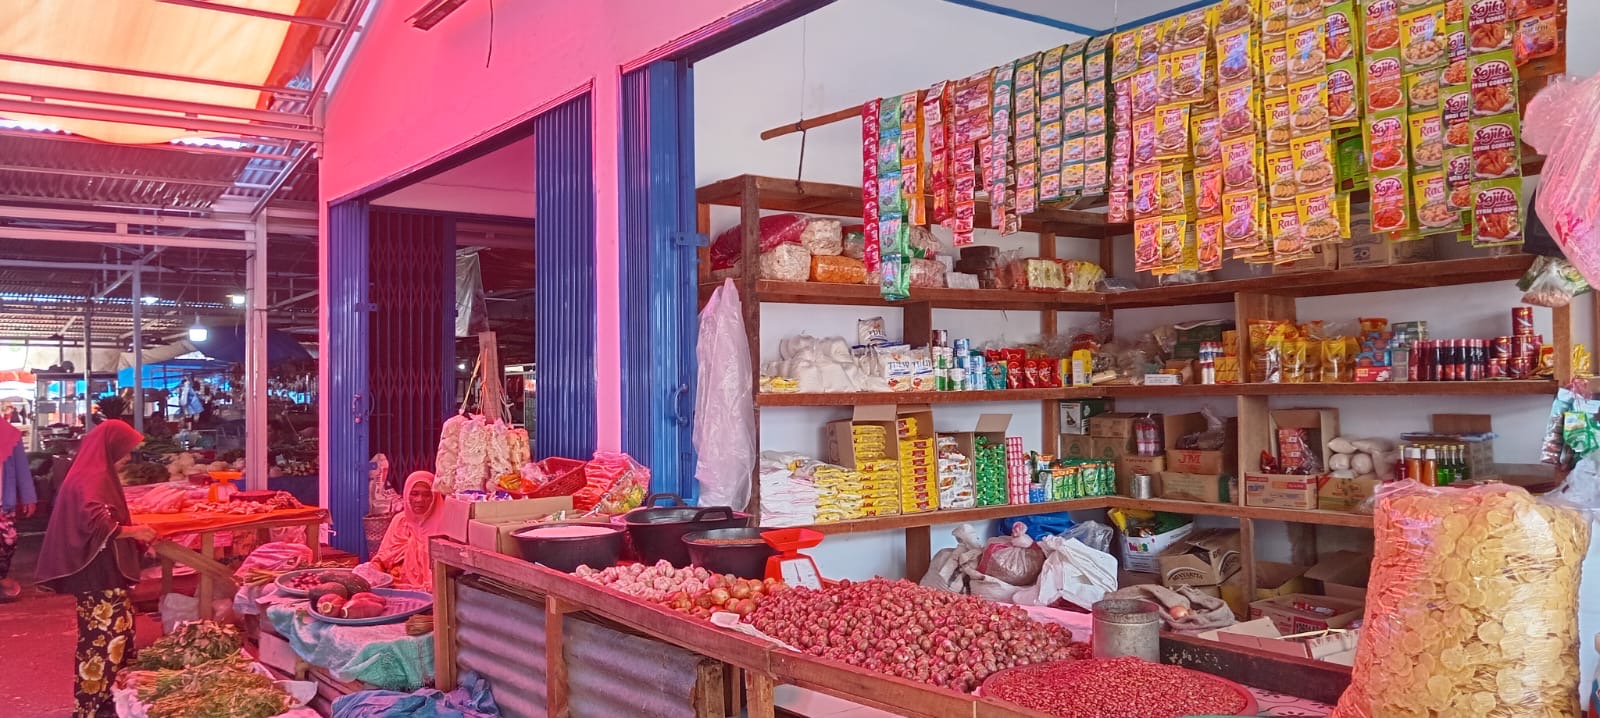 Berikut Update Harga Terbaru Sembako di Pasar Panorama Bengkulu Hari Ini